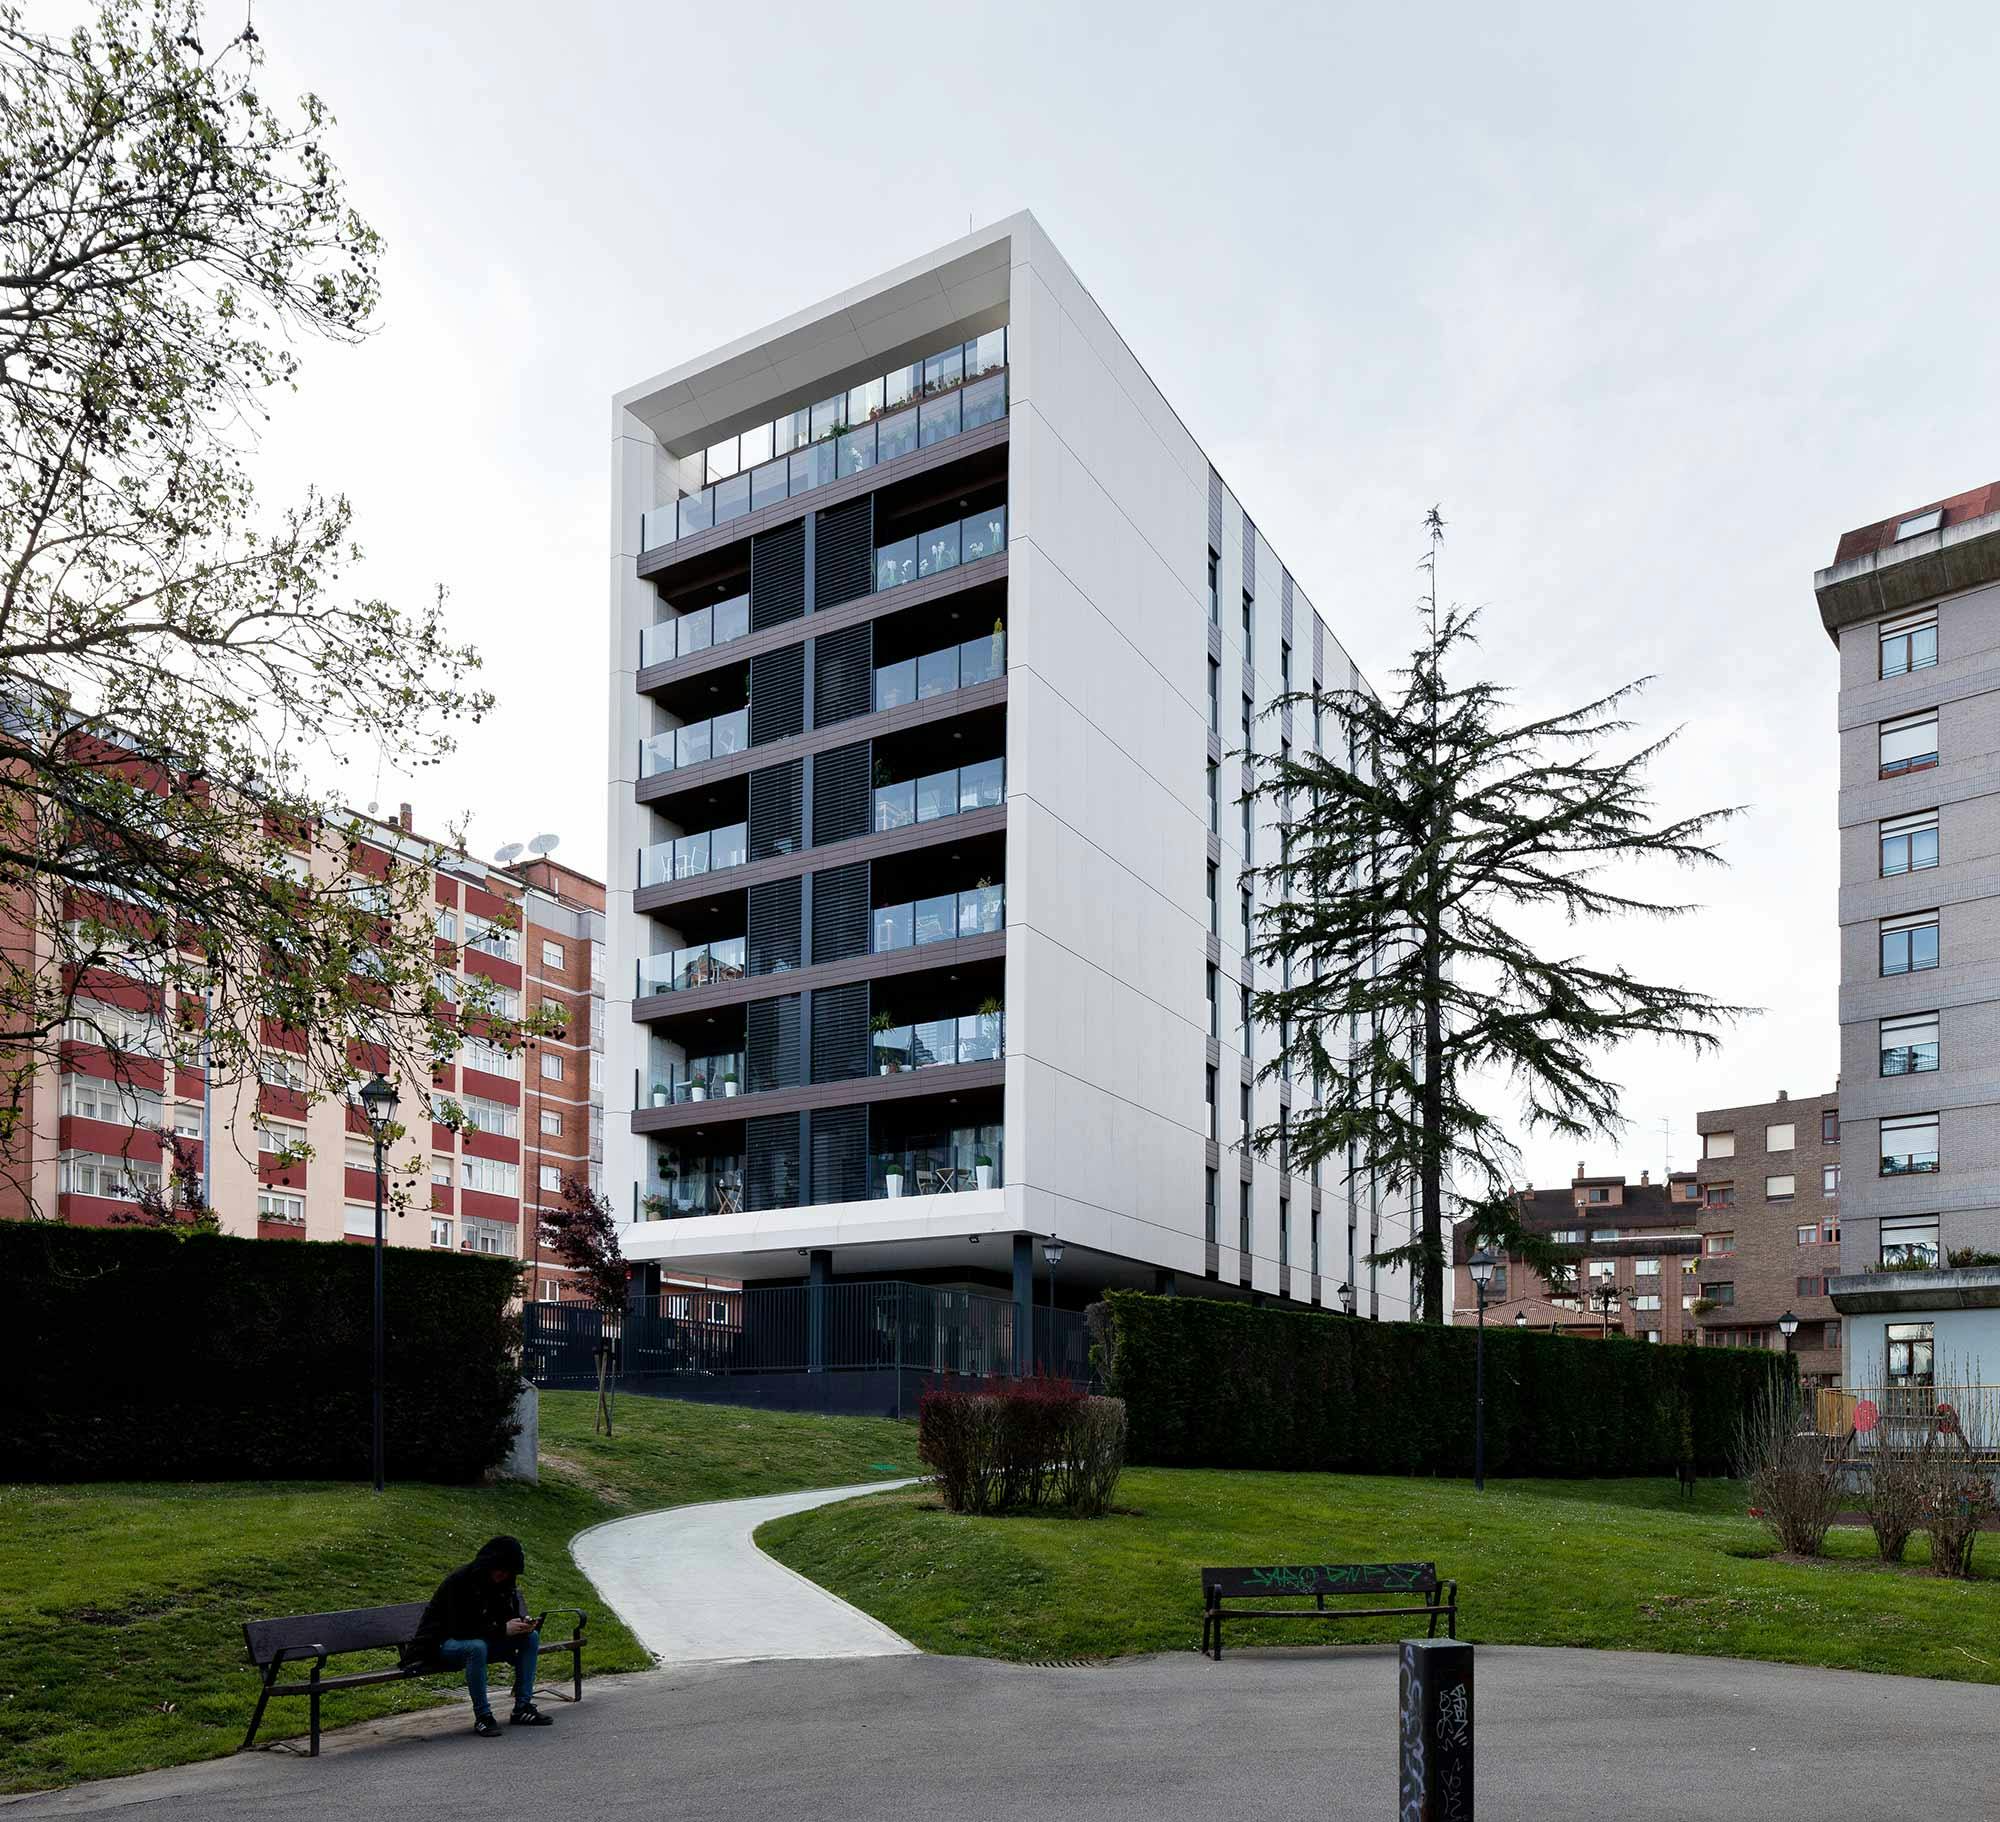 Image of Edificio viviendas oviedo sanatorio blanco 6.jpg?auto=format%2Ccompress&ixlib=php 3.3 in Clean lines and sustainable materials for Chapon Fin facades - Cosentino